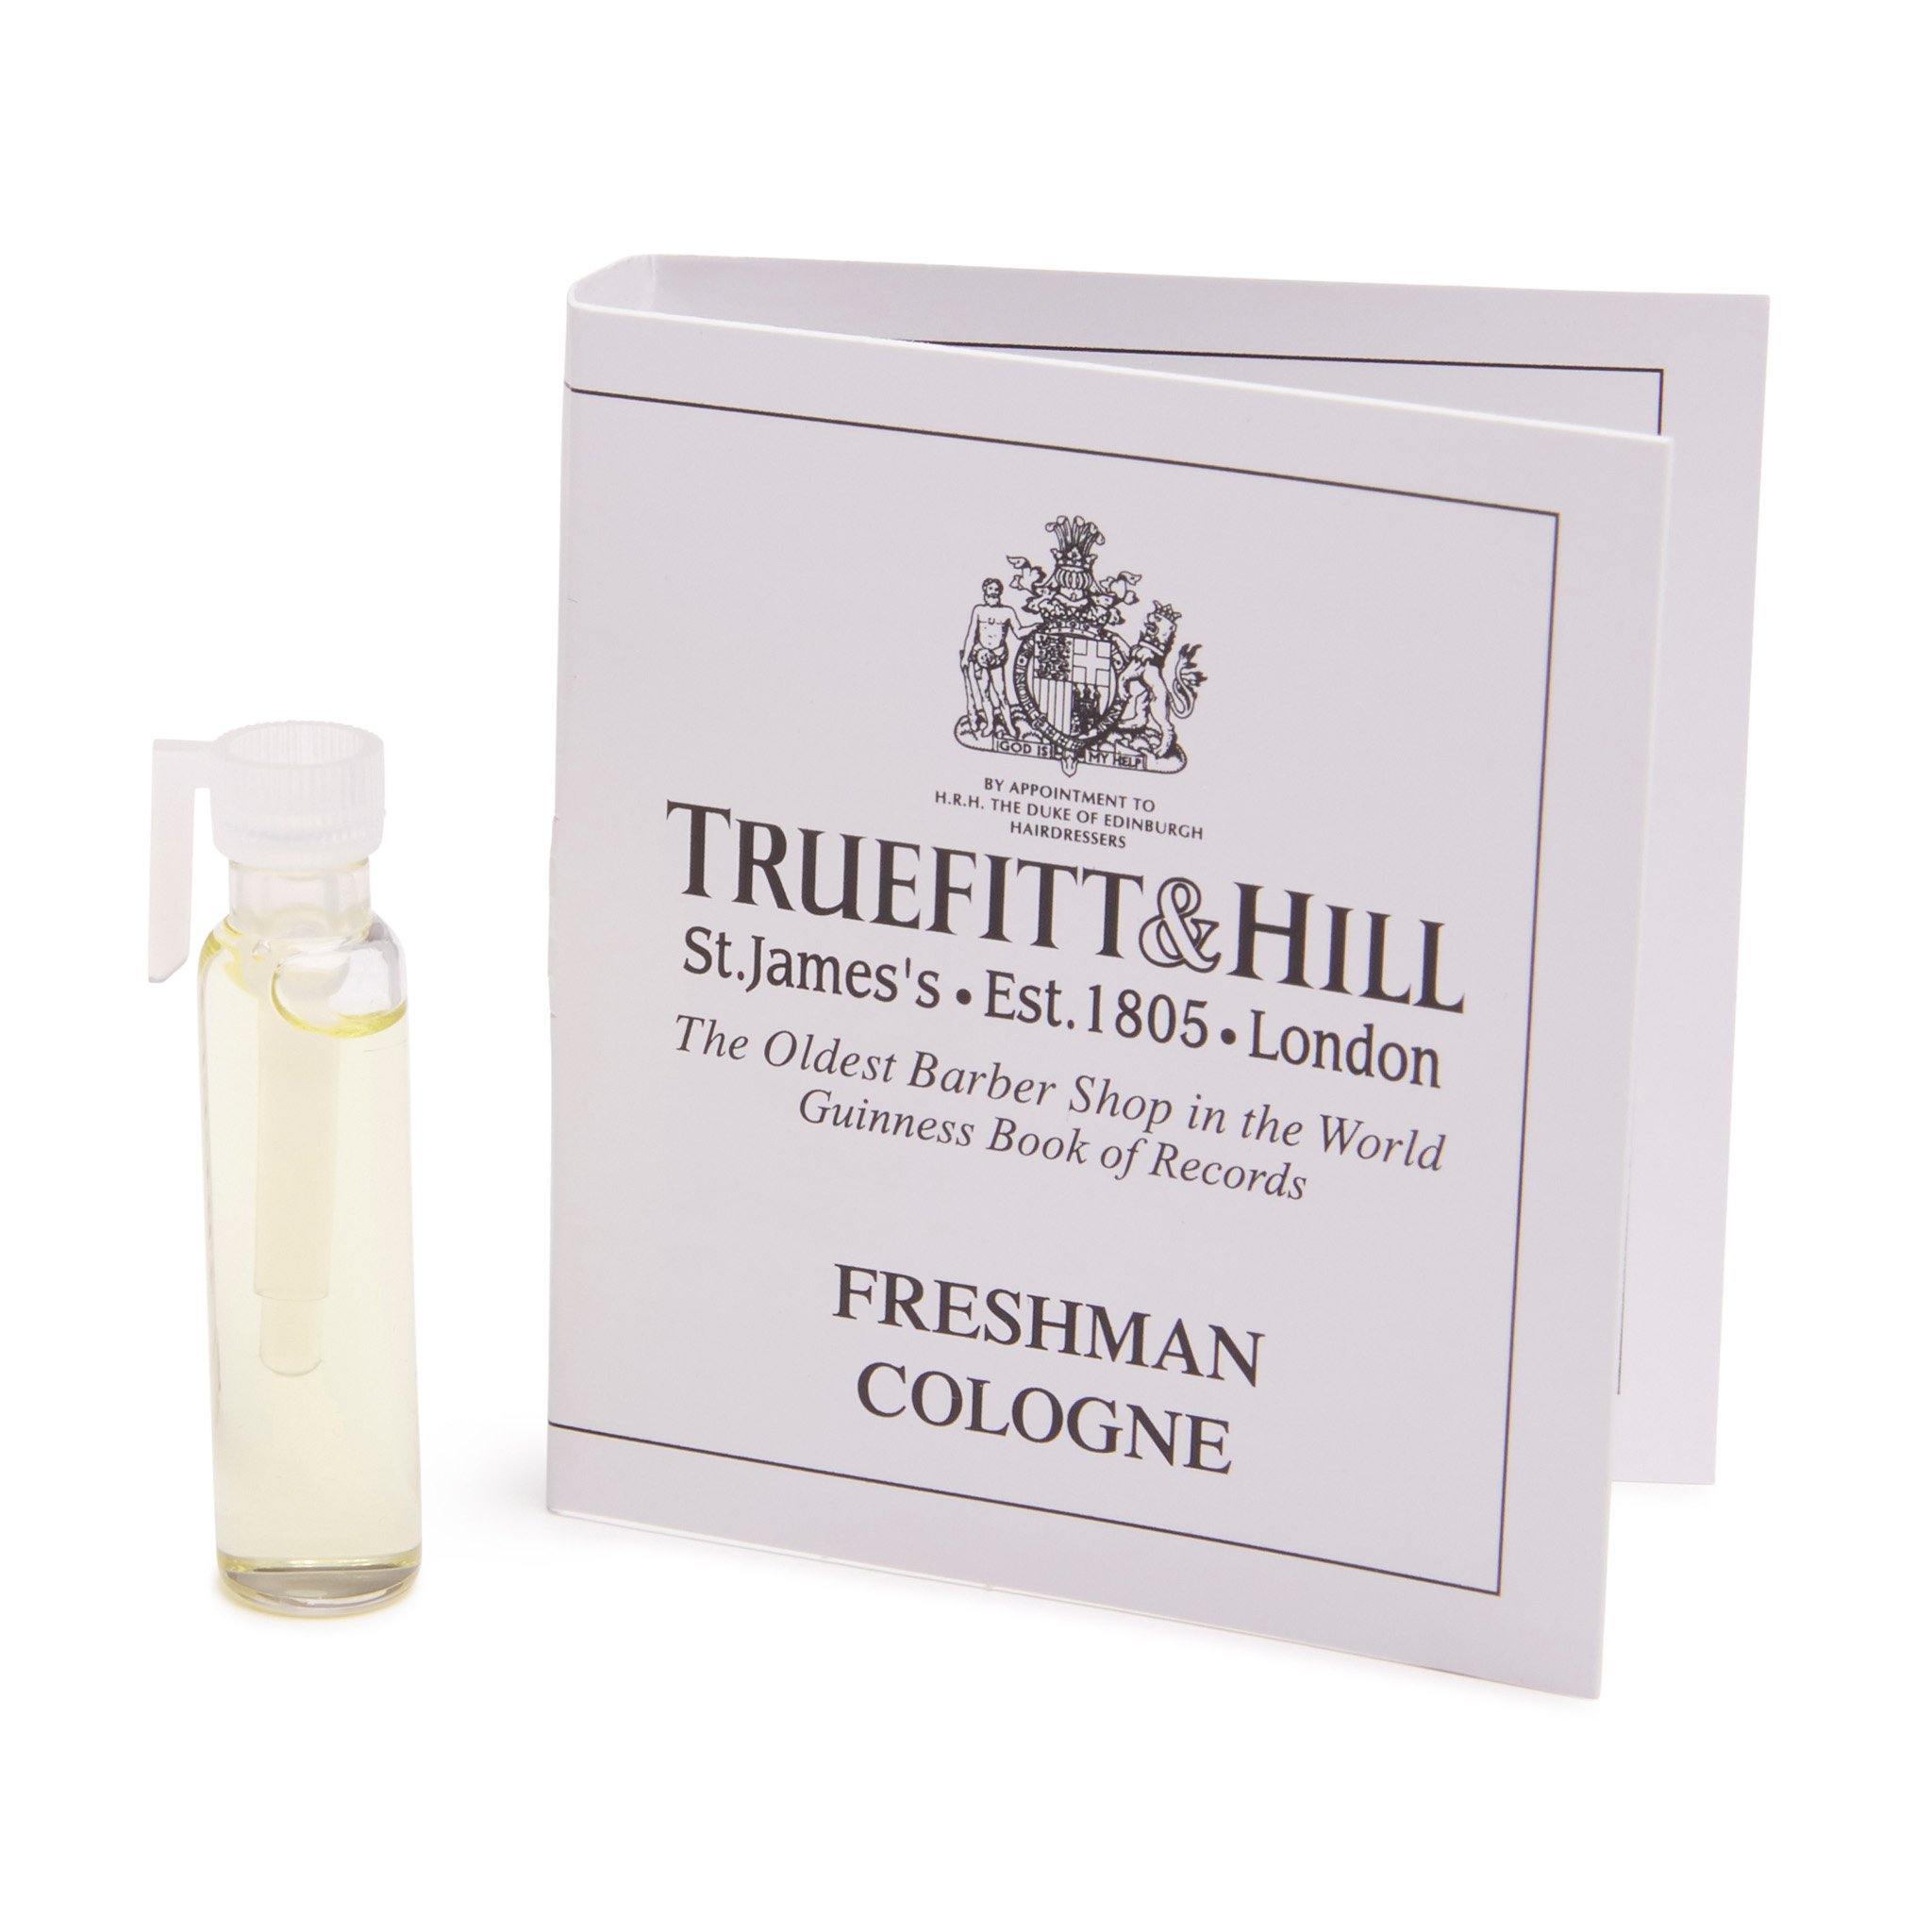 Truefitt & Hill Cologne vareprøve Freshman